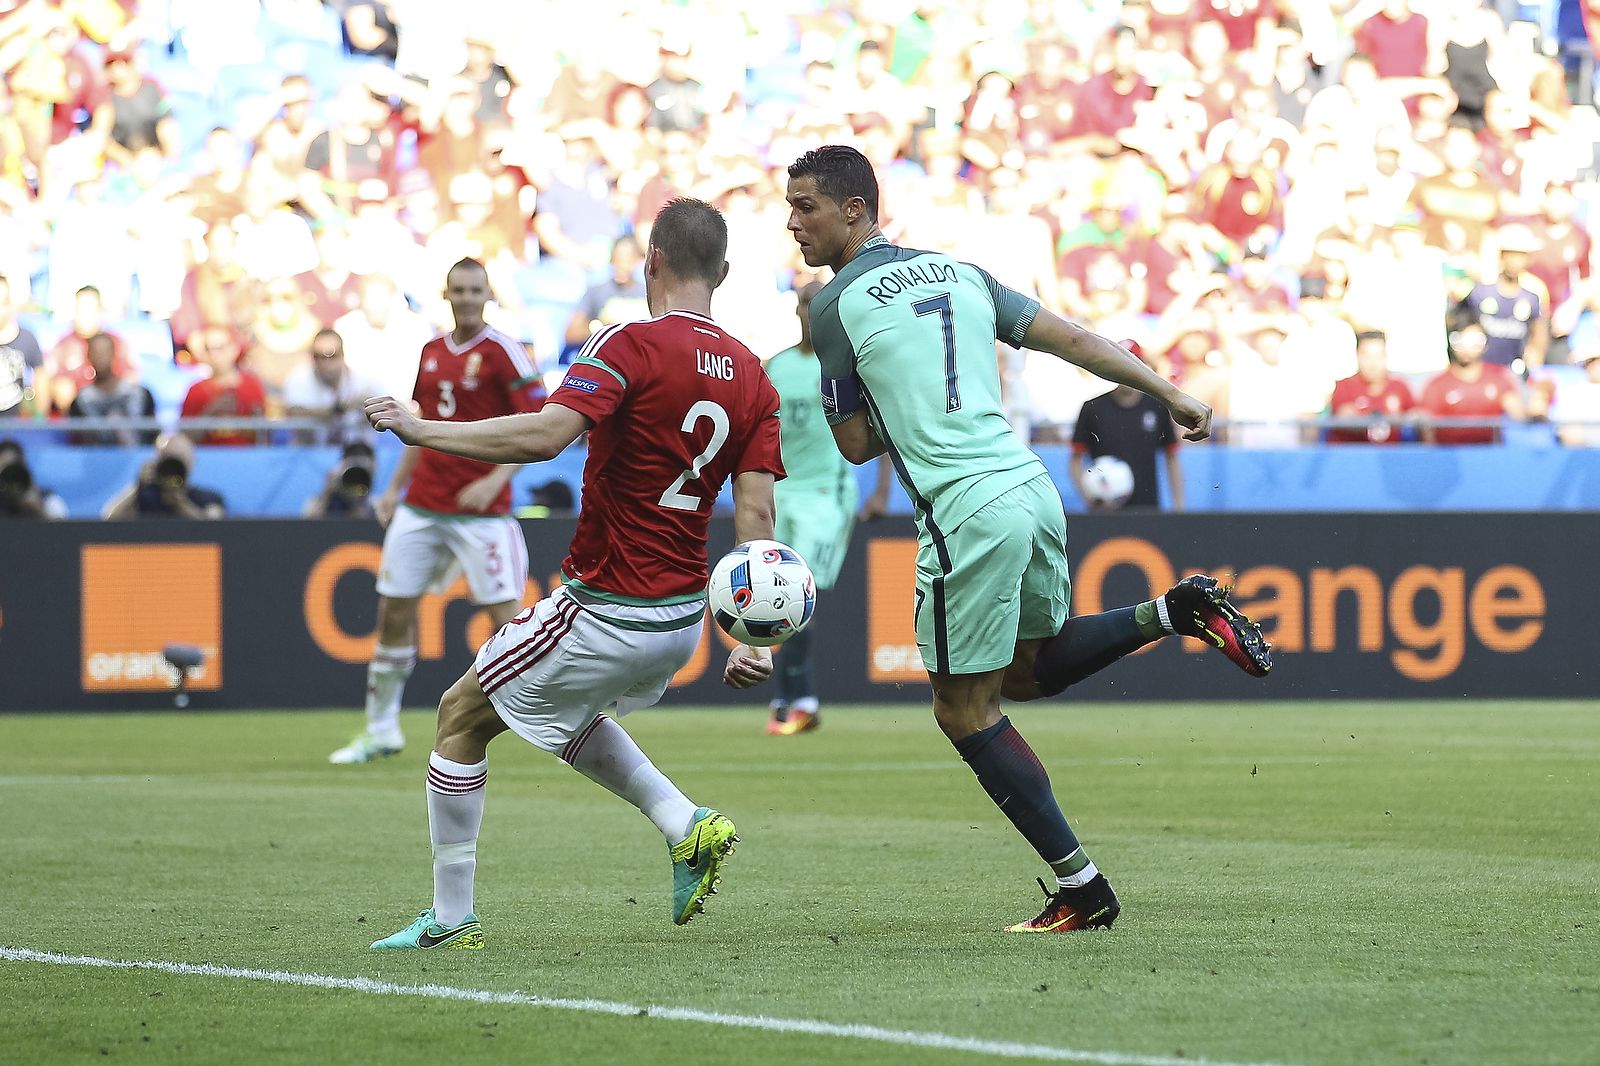 Cristiano Ronaldo scores Portugal’s second goal